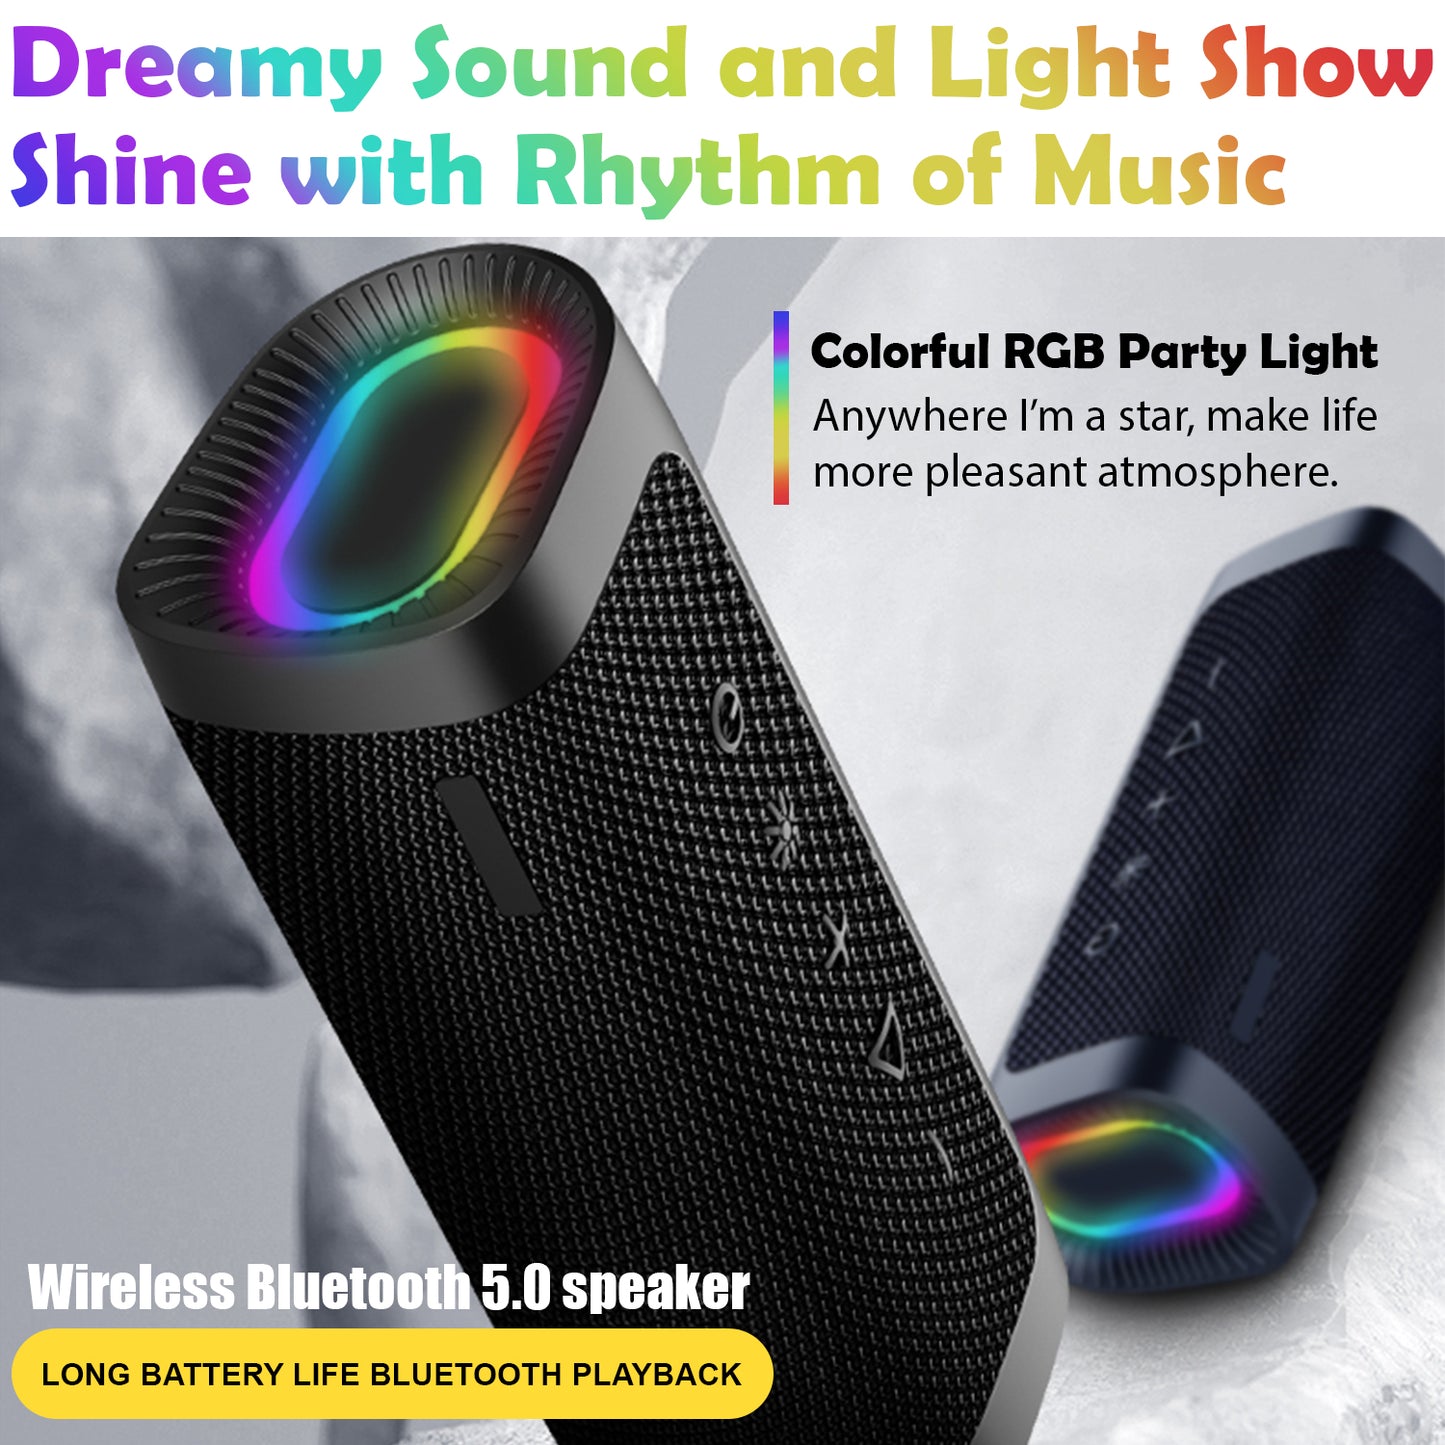 Portable Bluetooth Speakers Waterproof IPX6